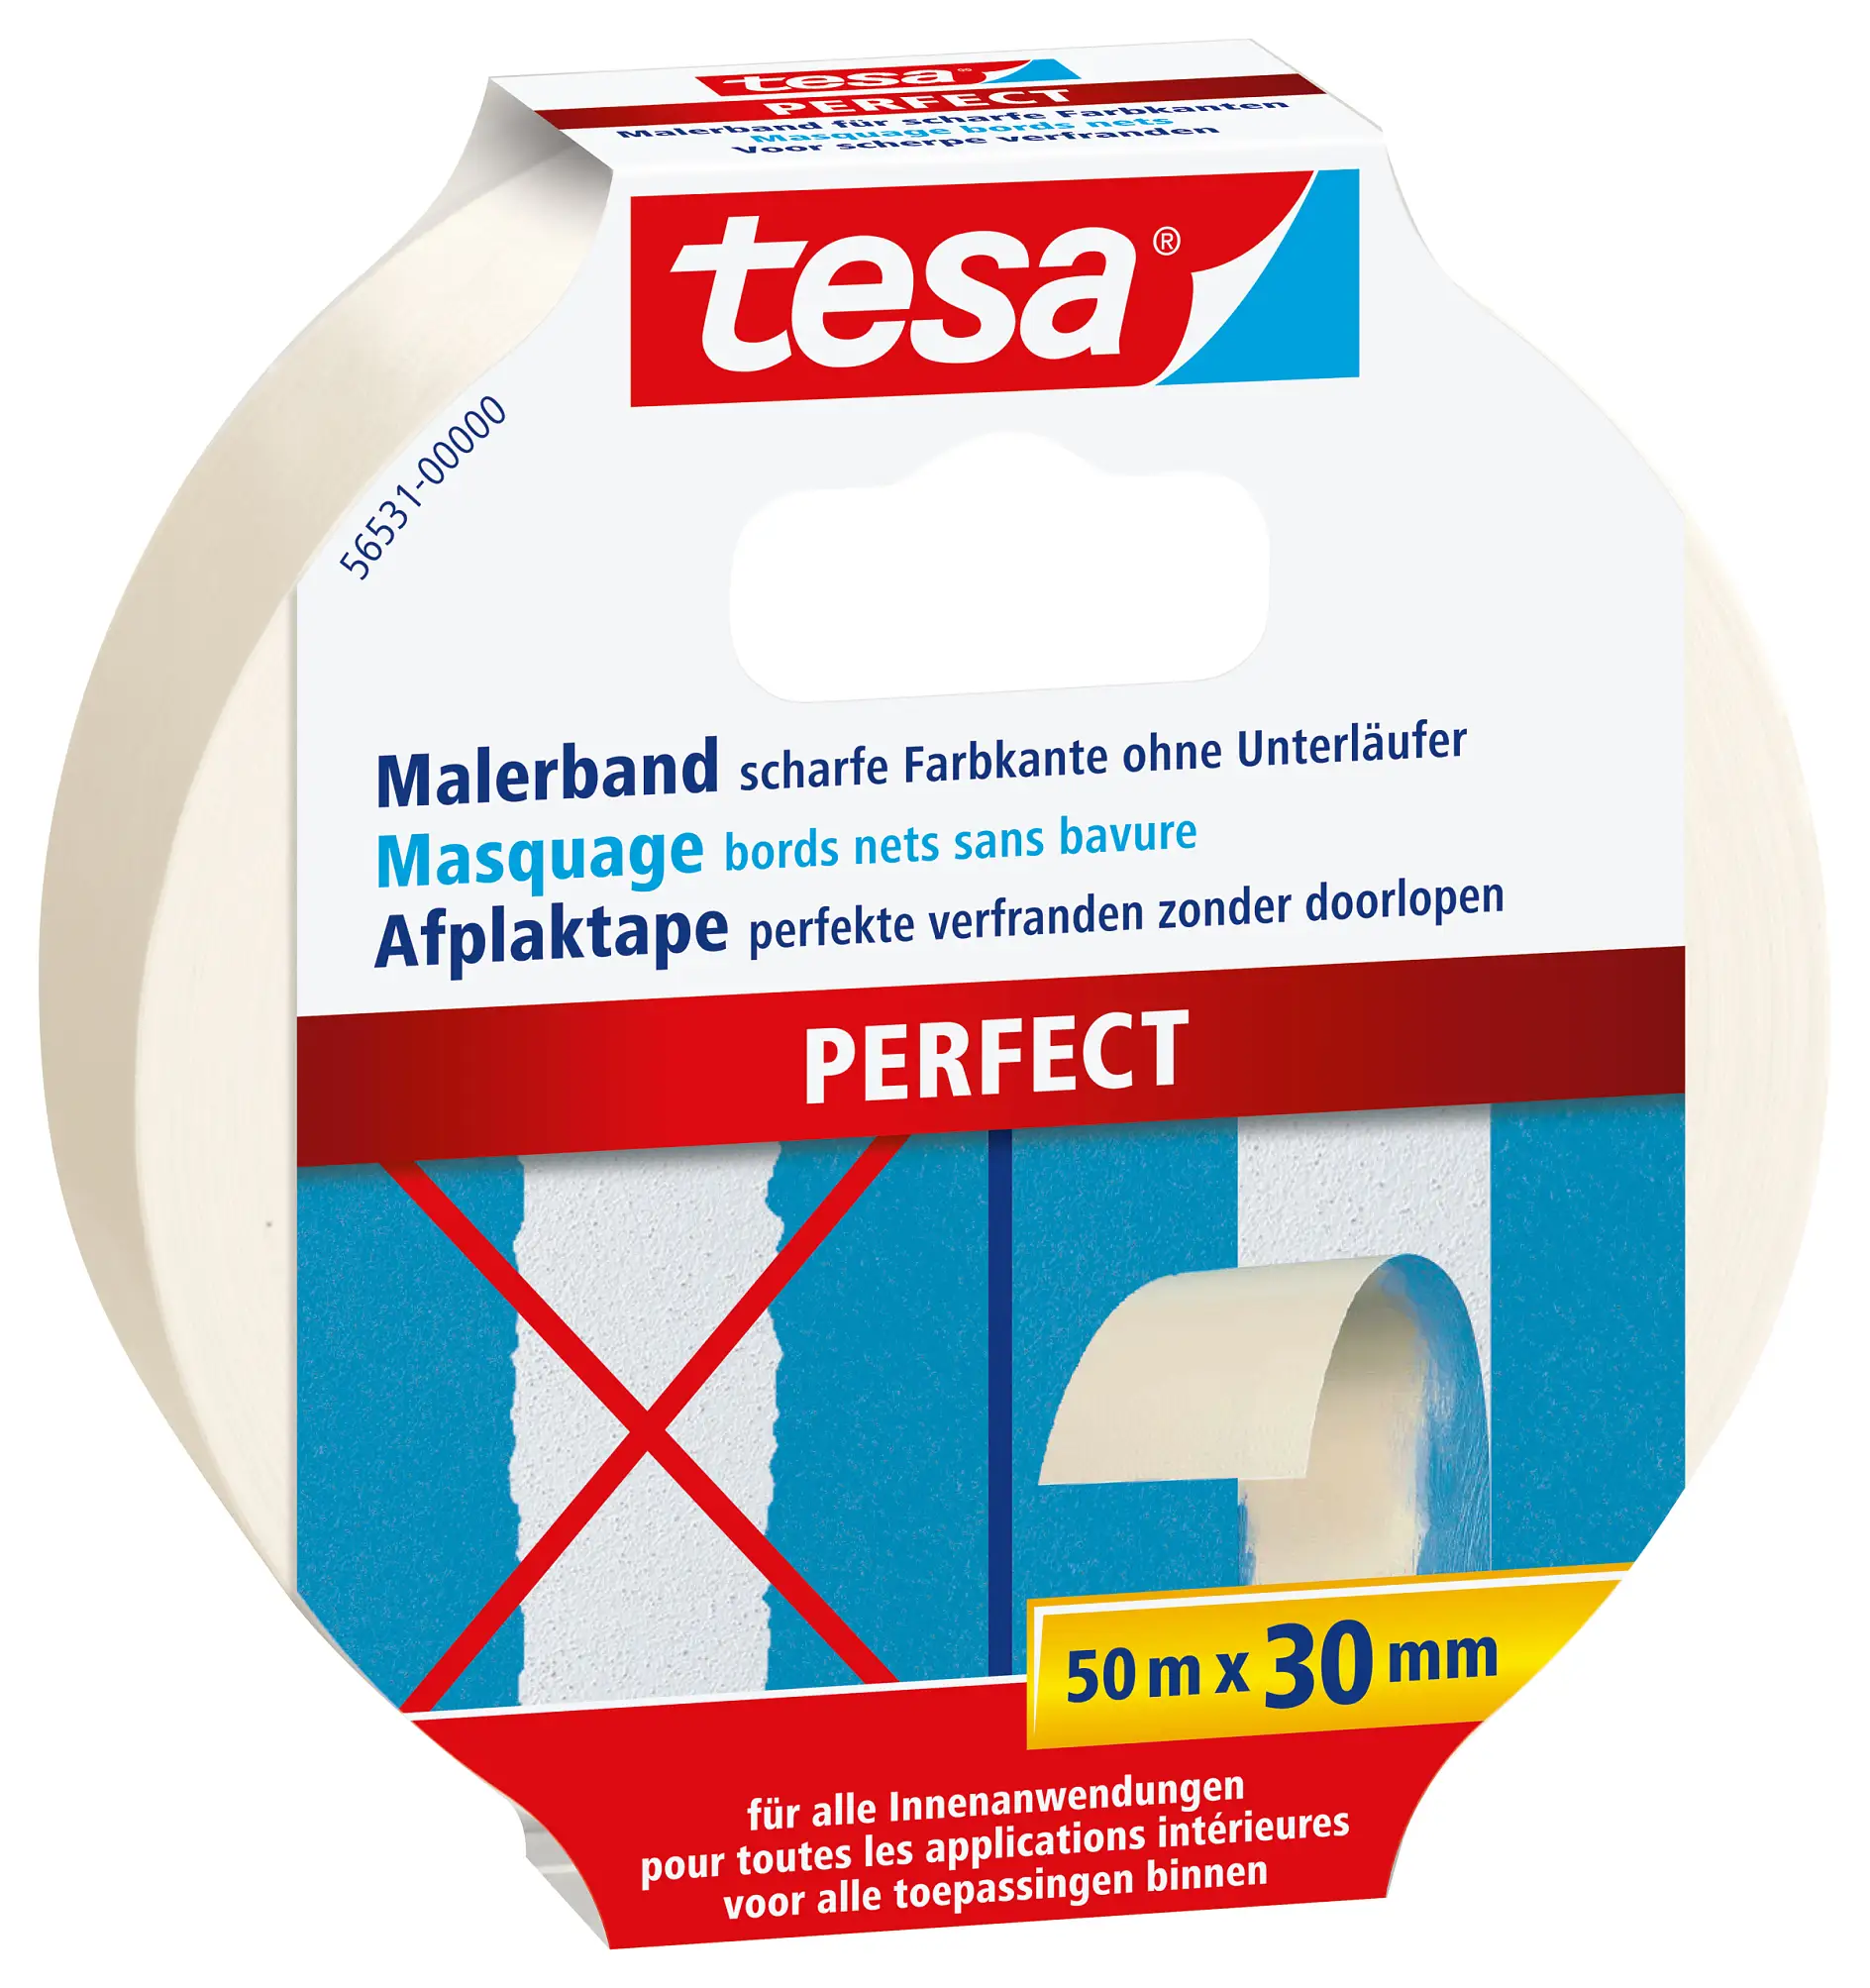 tesa® Malerband PERFECT 50 m x 30 mm